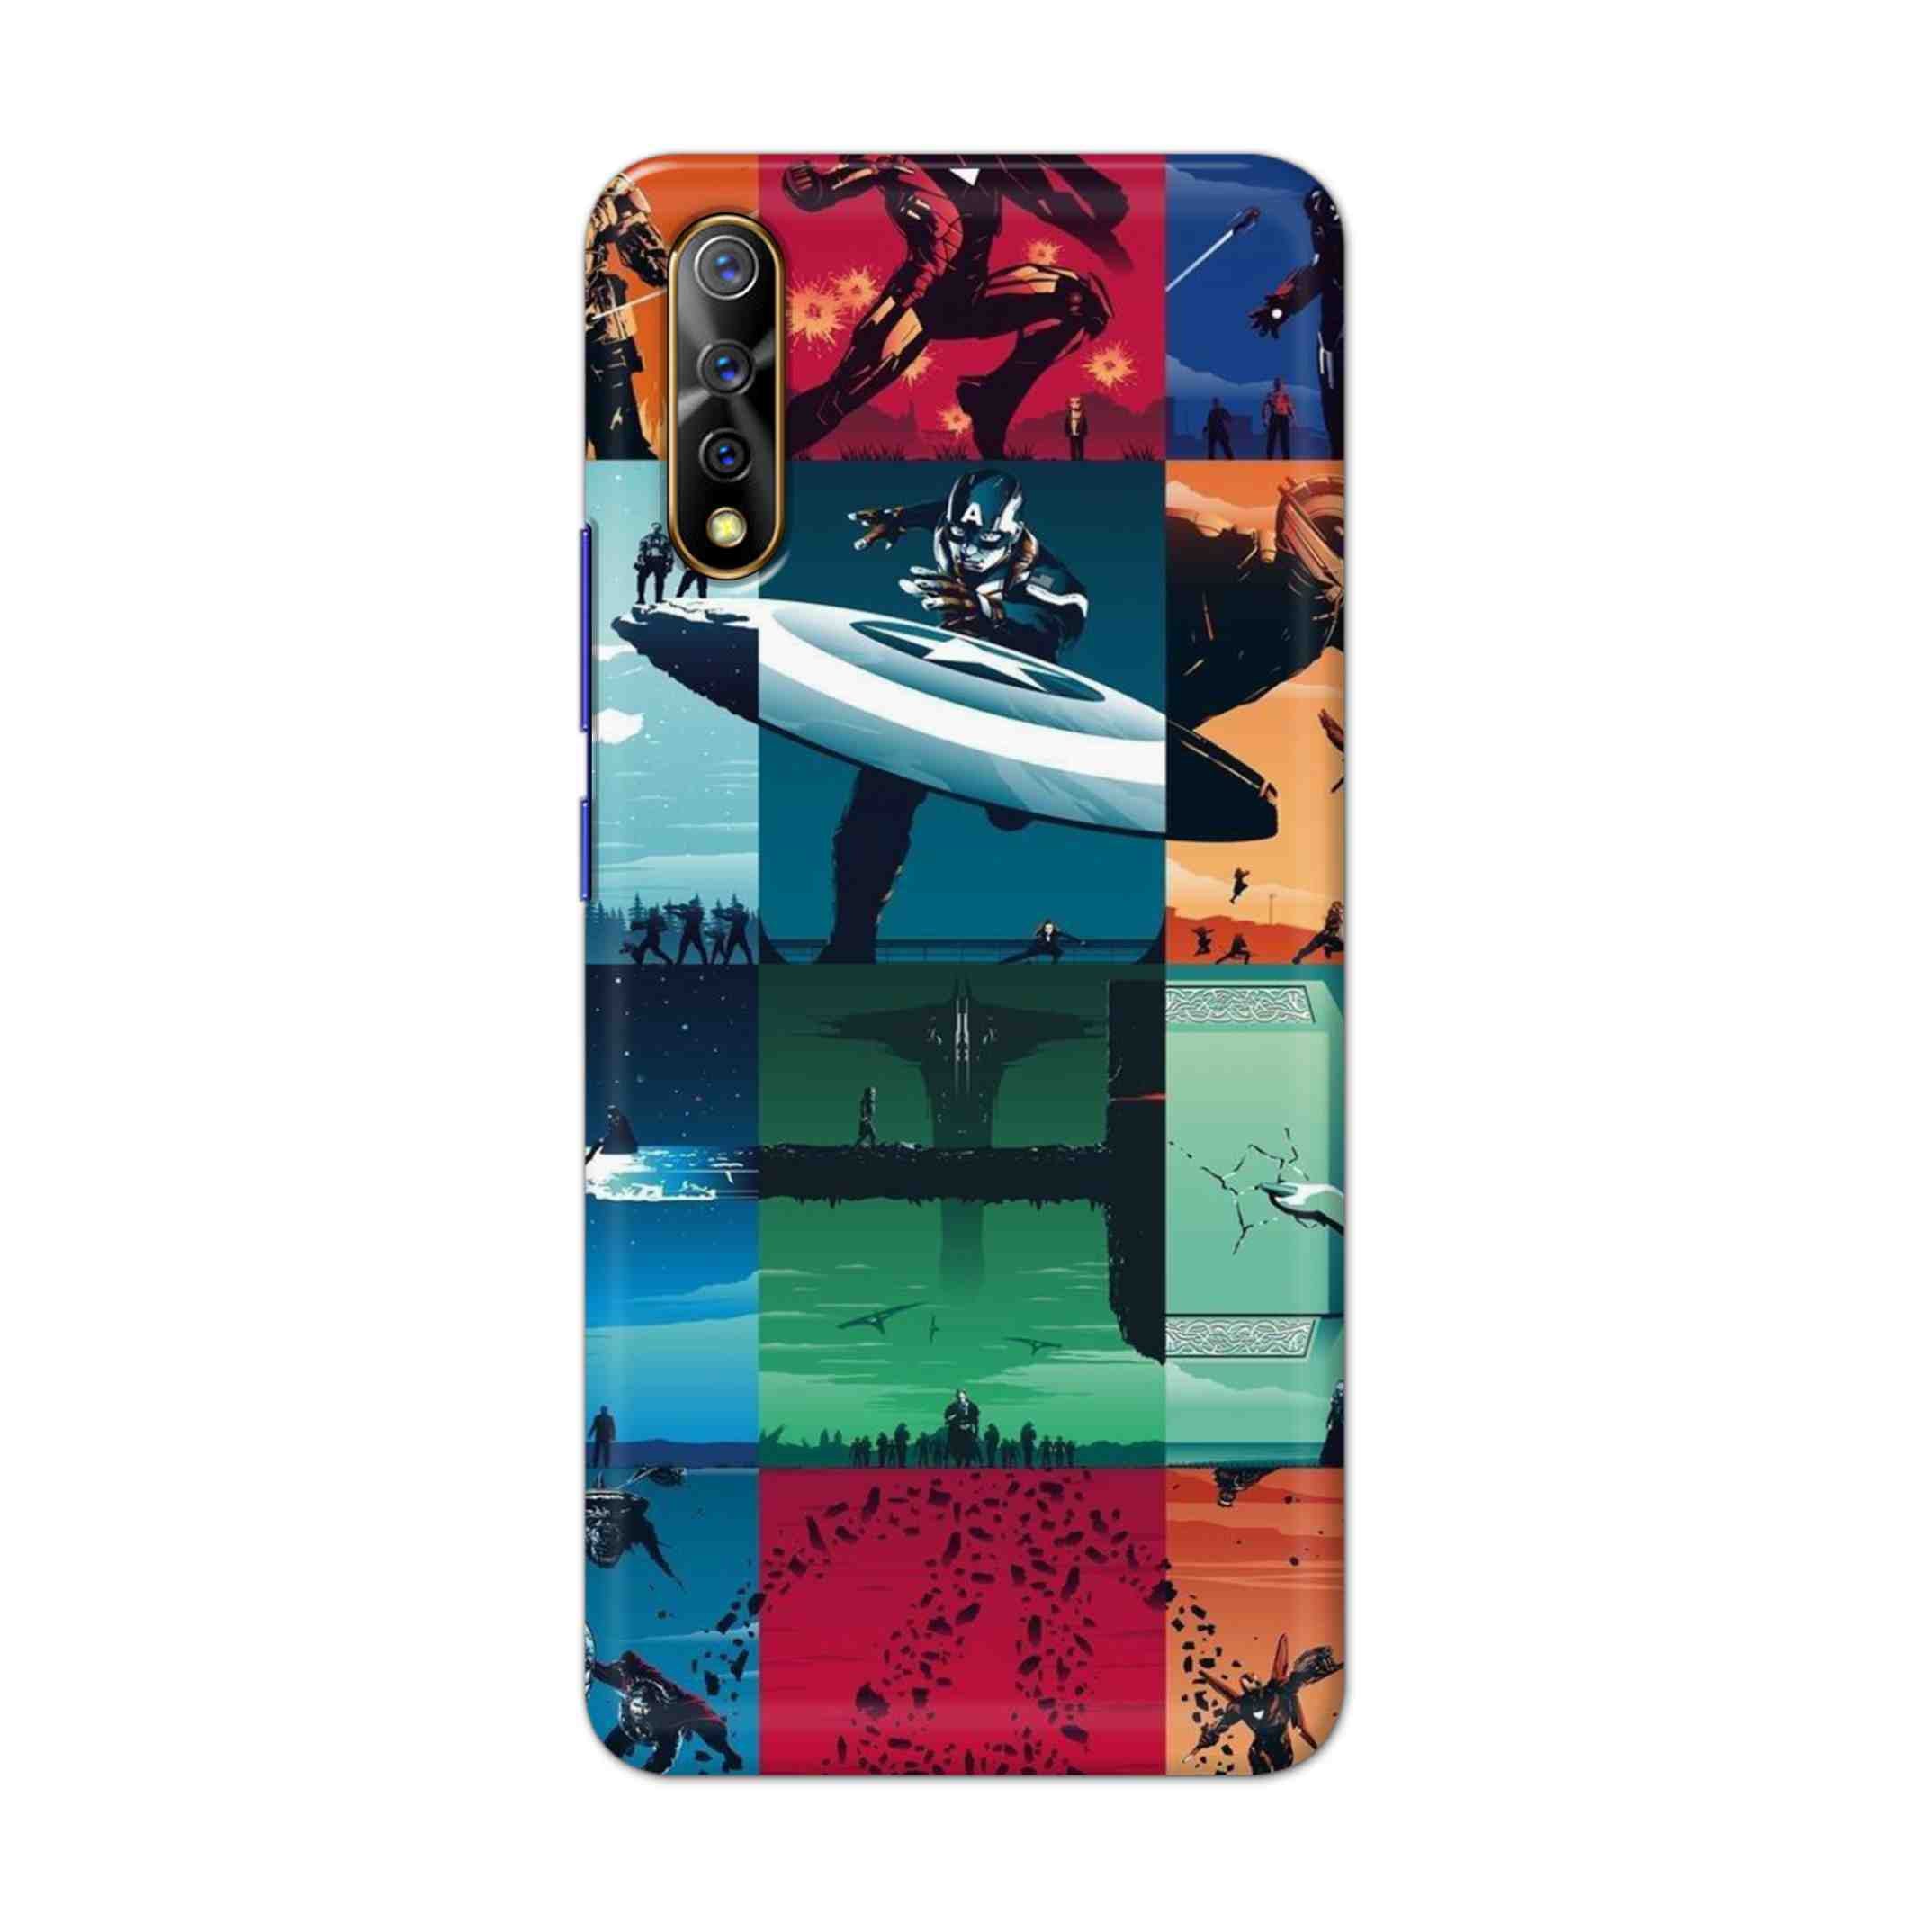 Buy Avengers Team Hard Back Mobile Phone Case Cover For Vivo S1 / Z1x Online